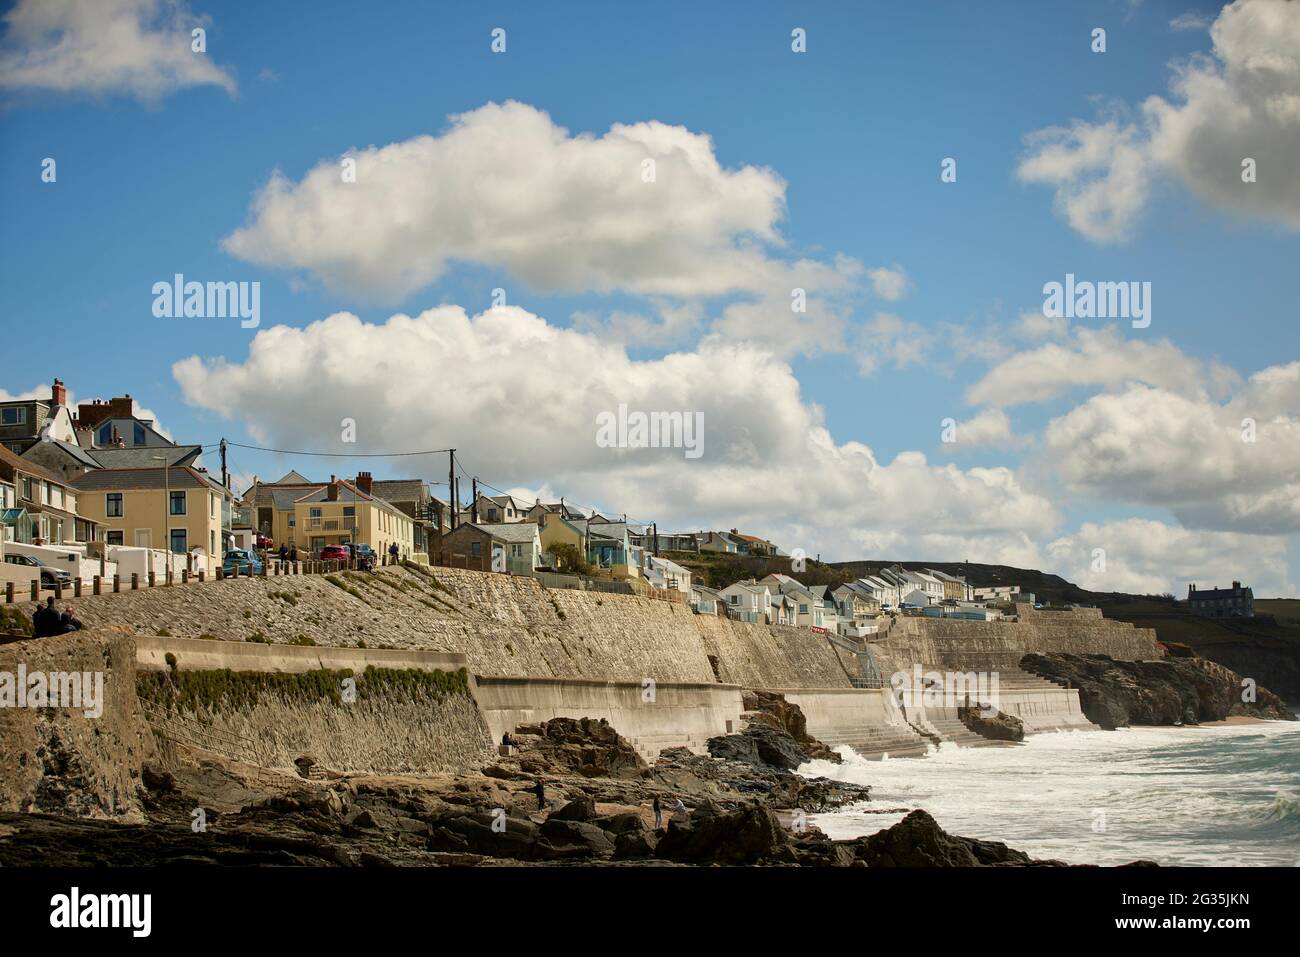 Destination touristique Cornish Porthleven, Cornouailles, Angleterre, a photographié des logements le long de la route côtière Cliff Road et du mur de défense de la mer Banque D'Images